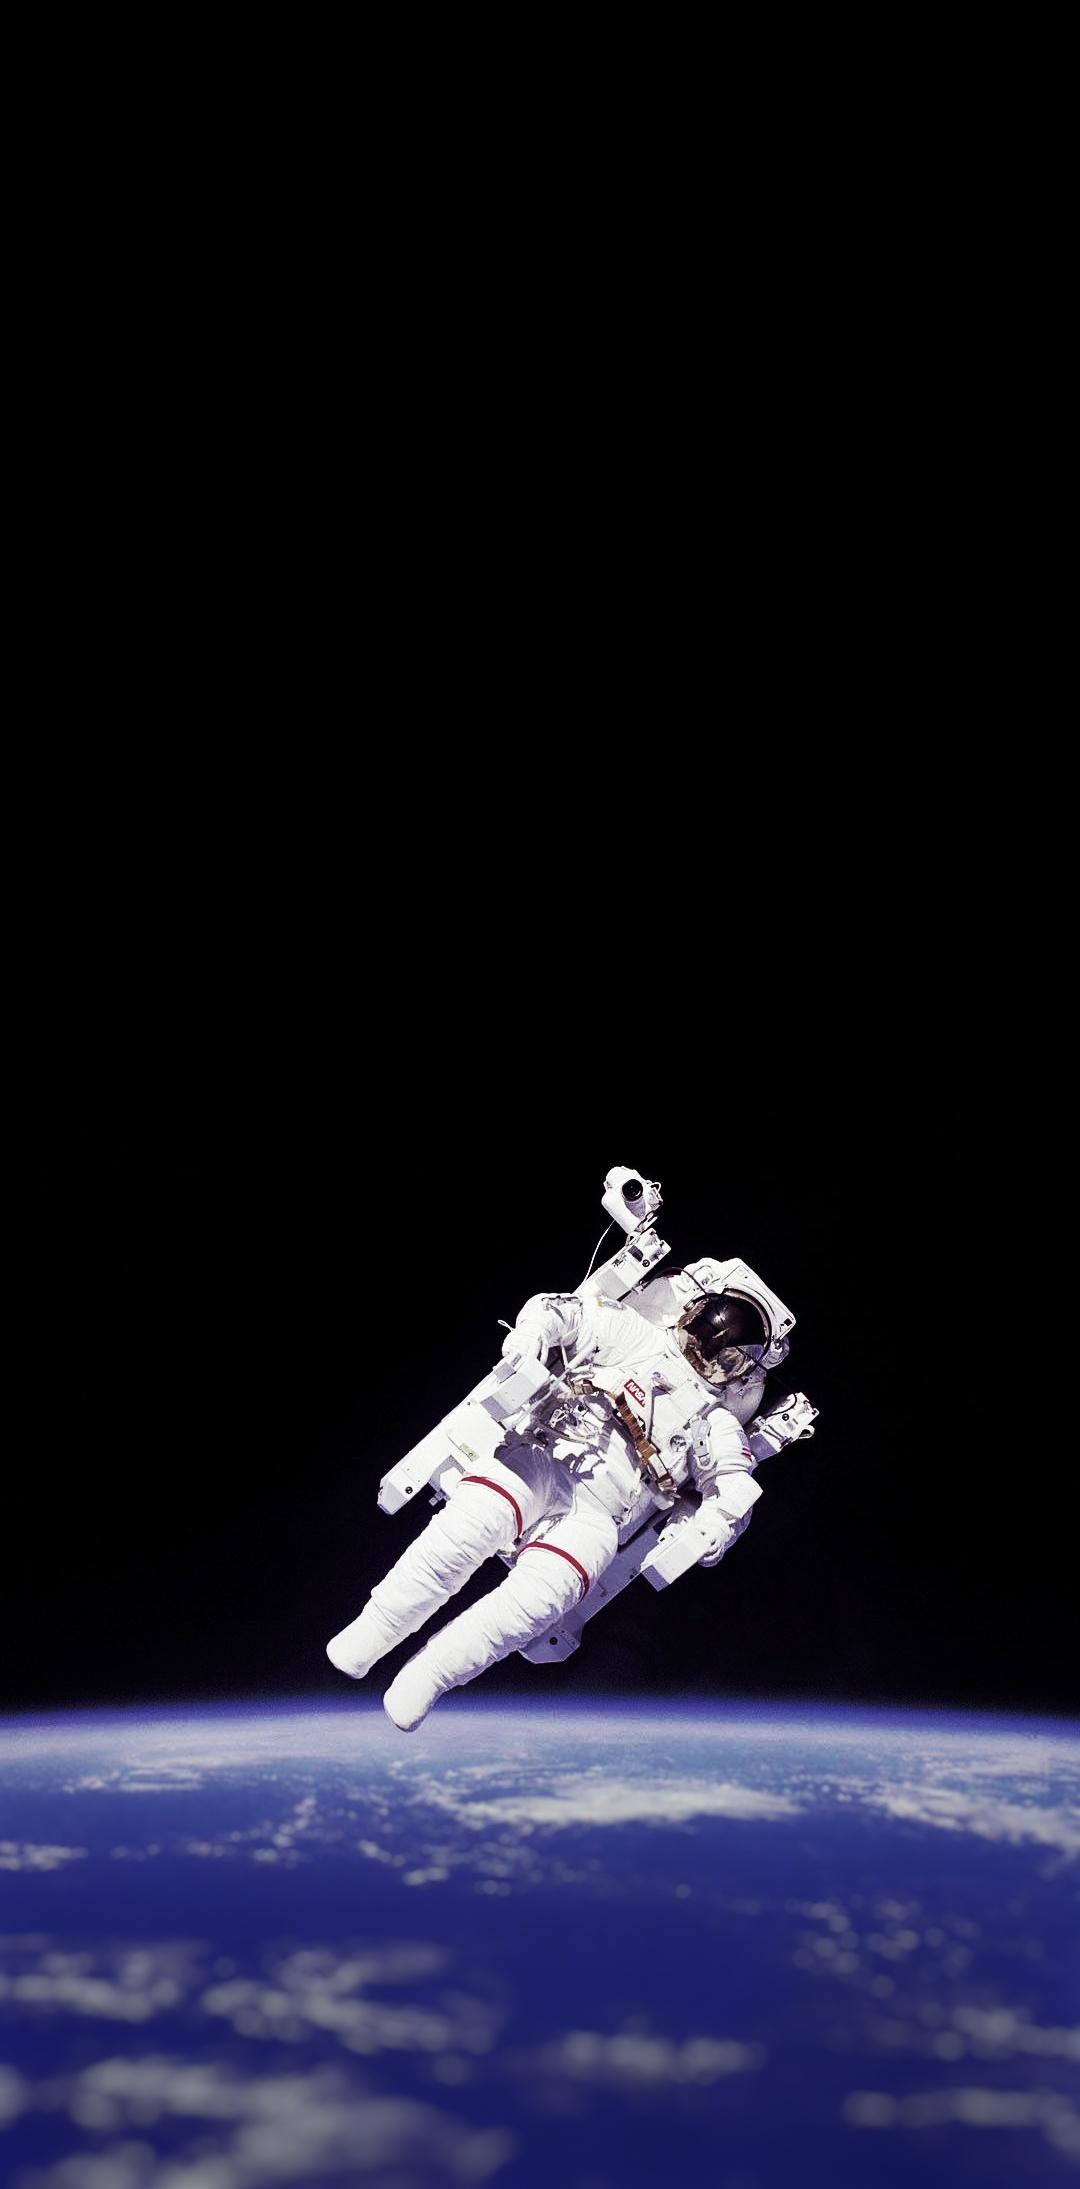 Astronaut On The Moon